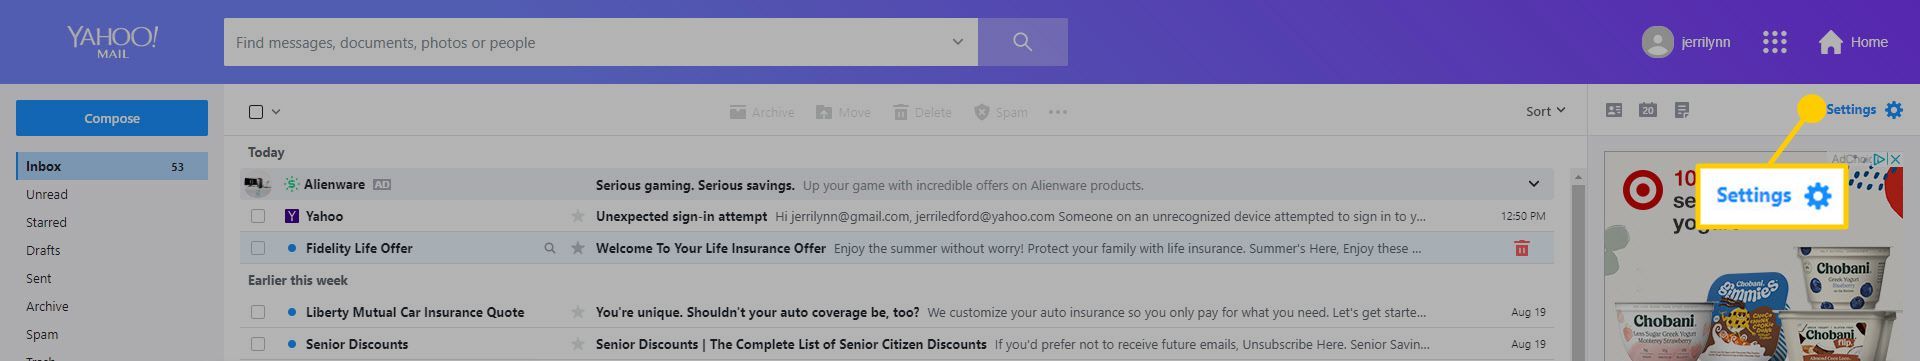 Скриншот расположения опции настроек в Yahoo! Почта.